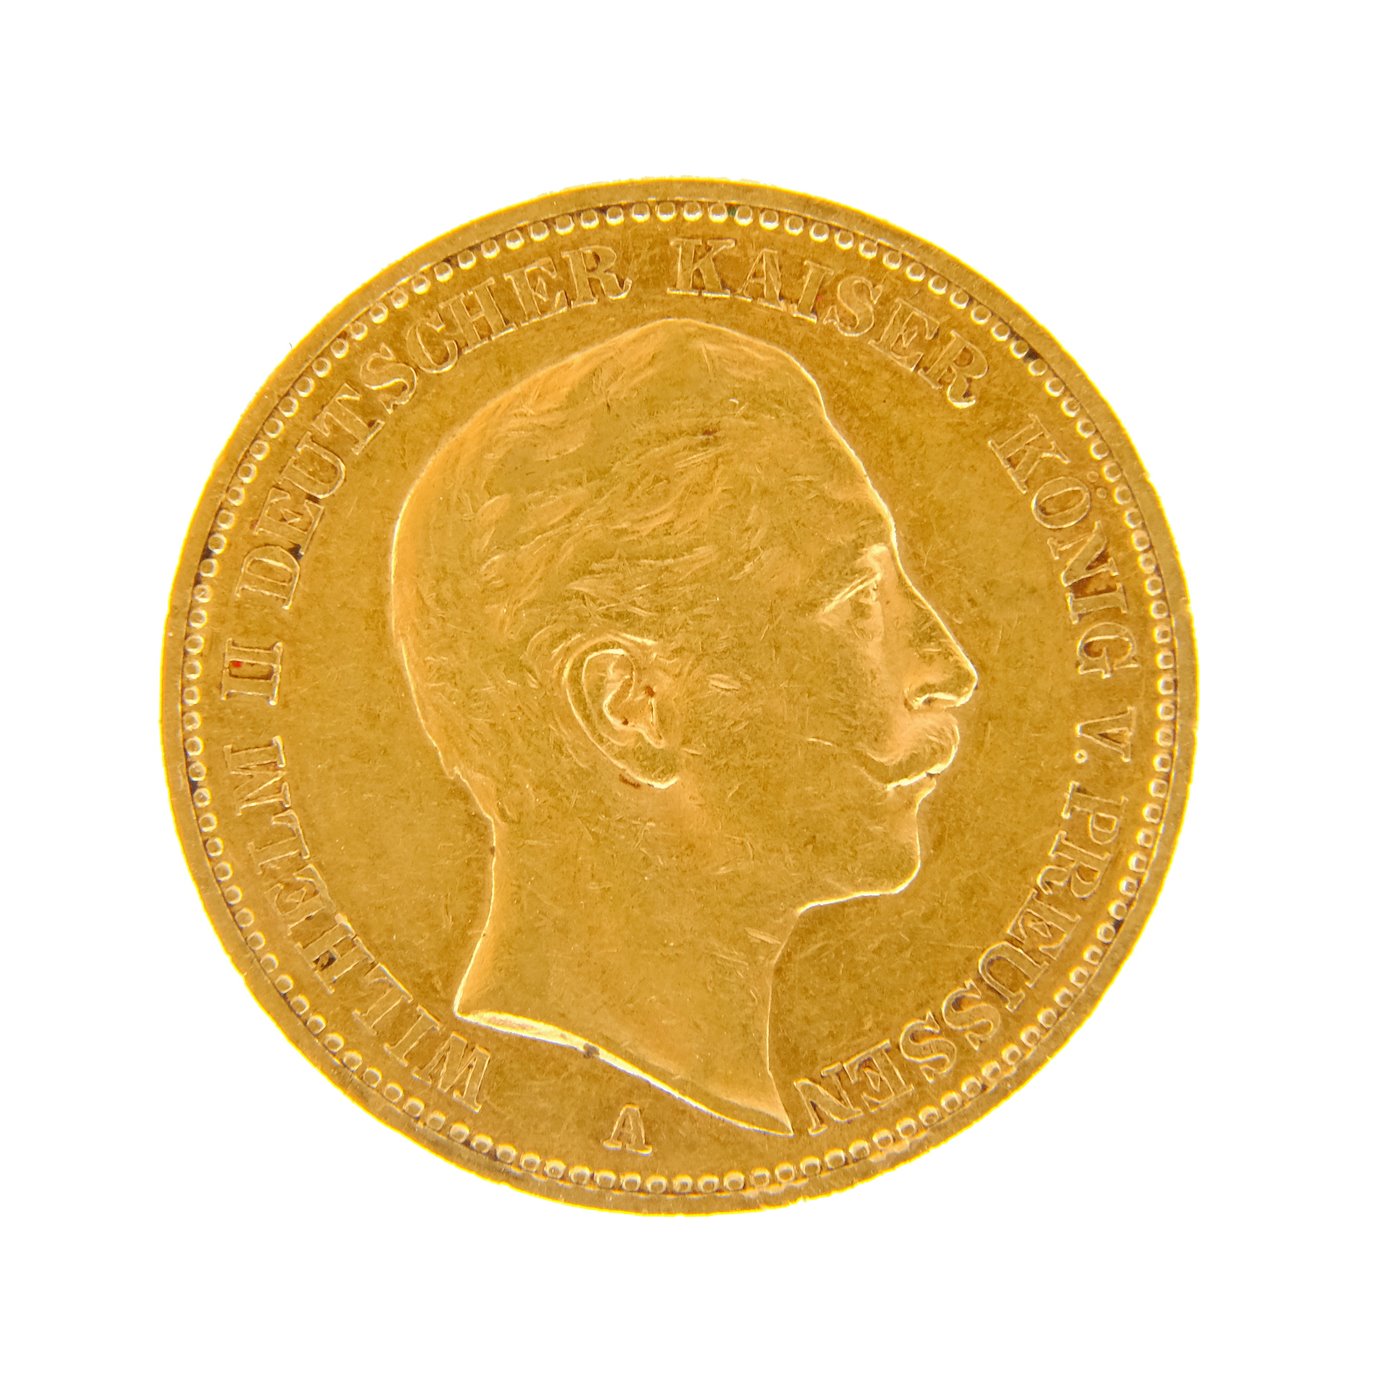 .. - Zlatá 20 Marka 1899 A císař Vilém II., zlato 900/1000, hmotnost hrubá 7,965g